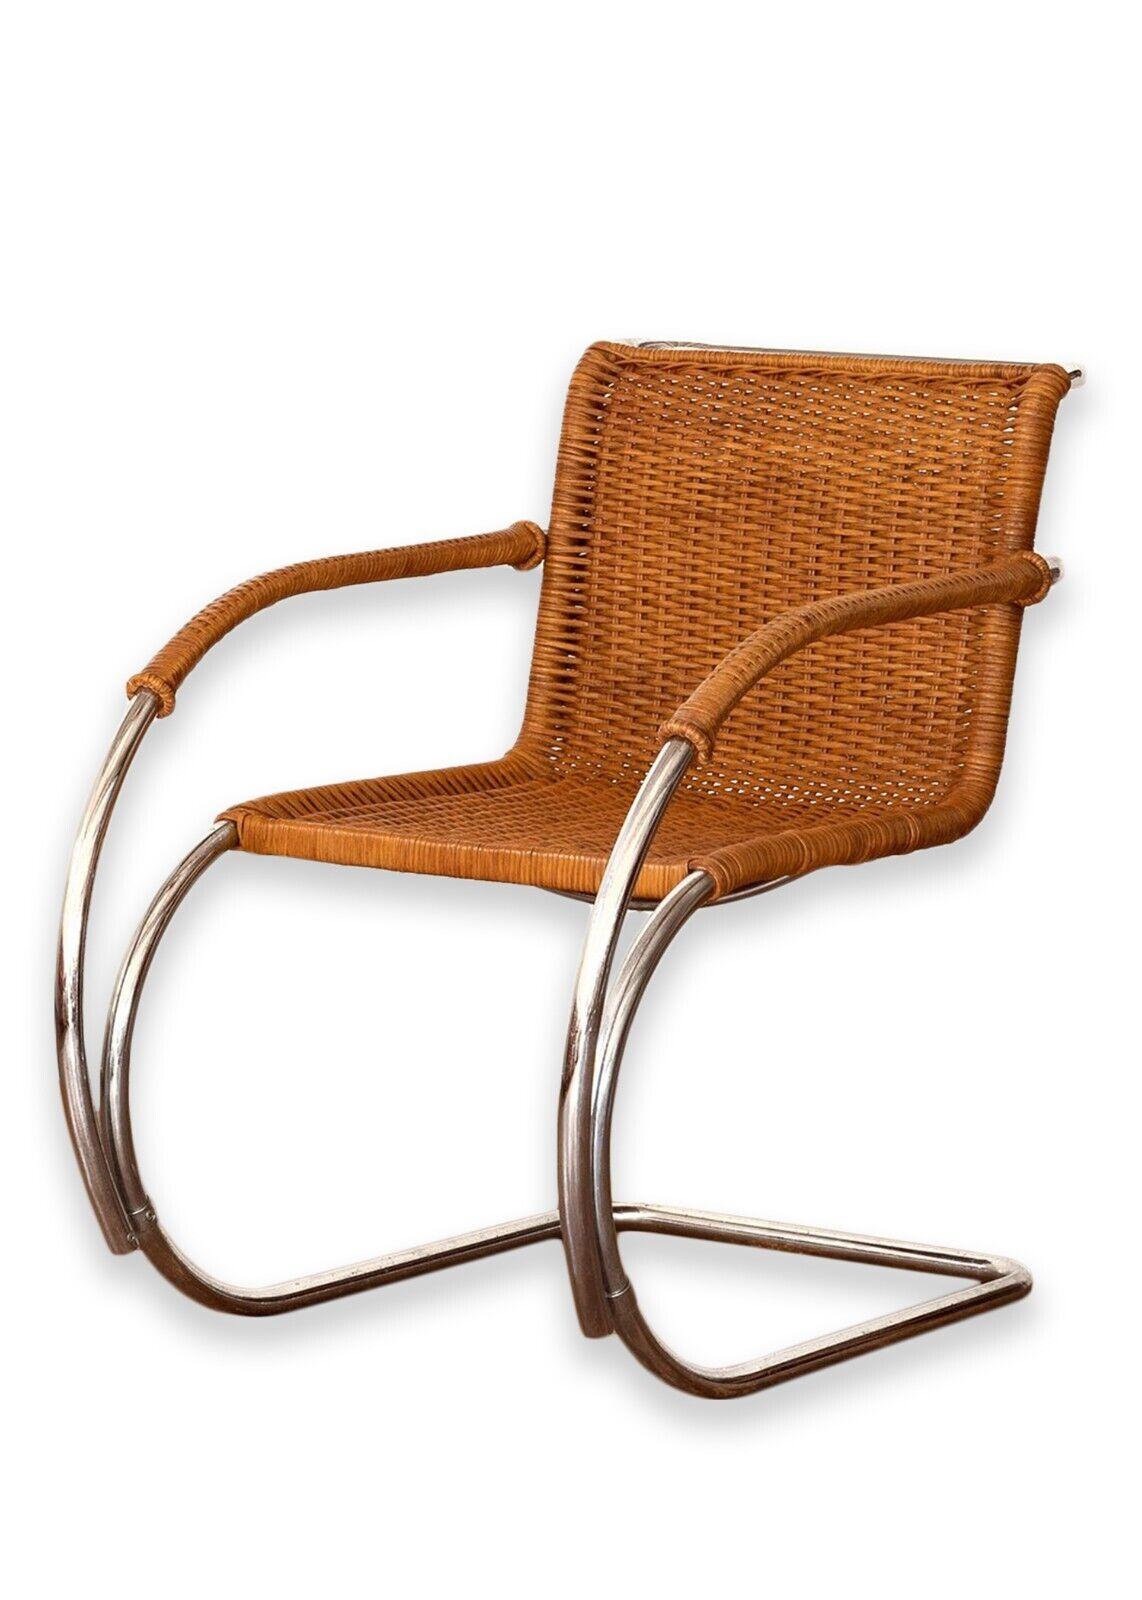 Ein Satz von 4 Mies Van Der Rohe MR20 Sesseln. Dieses wunderbare und ikonische Stuhlset wurde ursprünglich 1927 von Van Der Rohe entworfen und stammt vermutlich aus den 1960er Jahren. Die Sitzfläche und die Rückenlehne dieses Sets bestehen aus